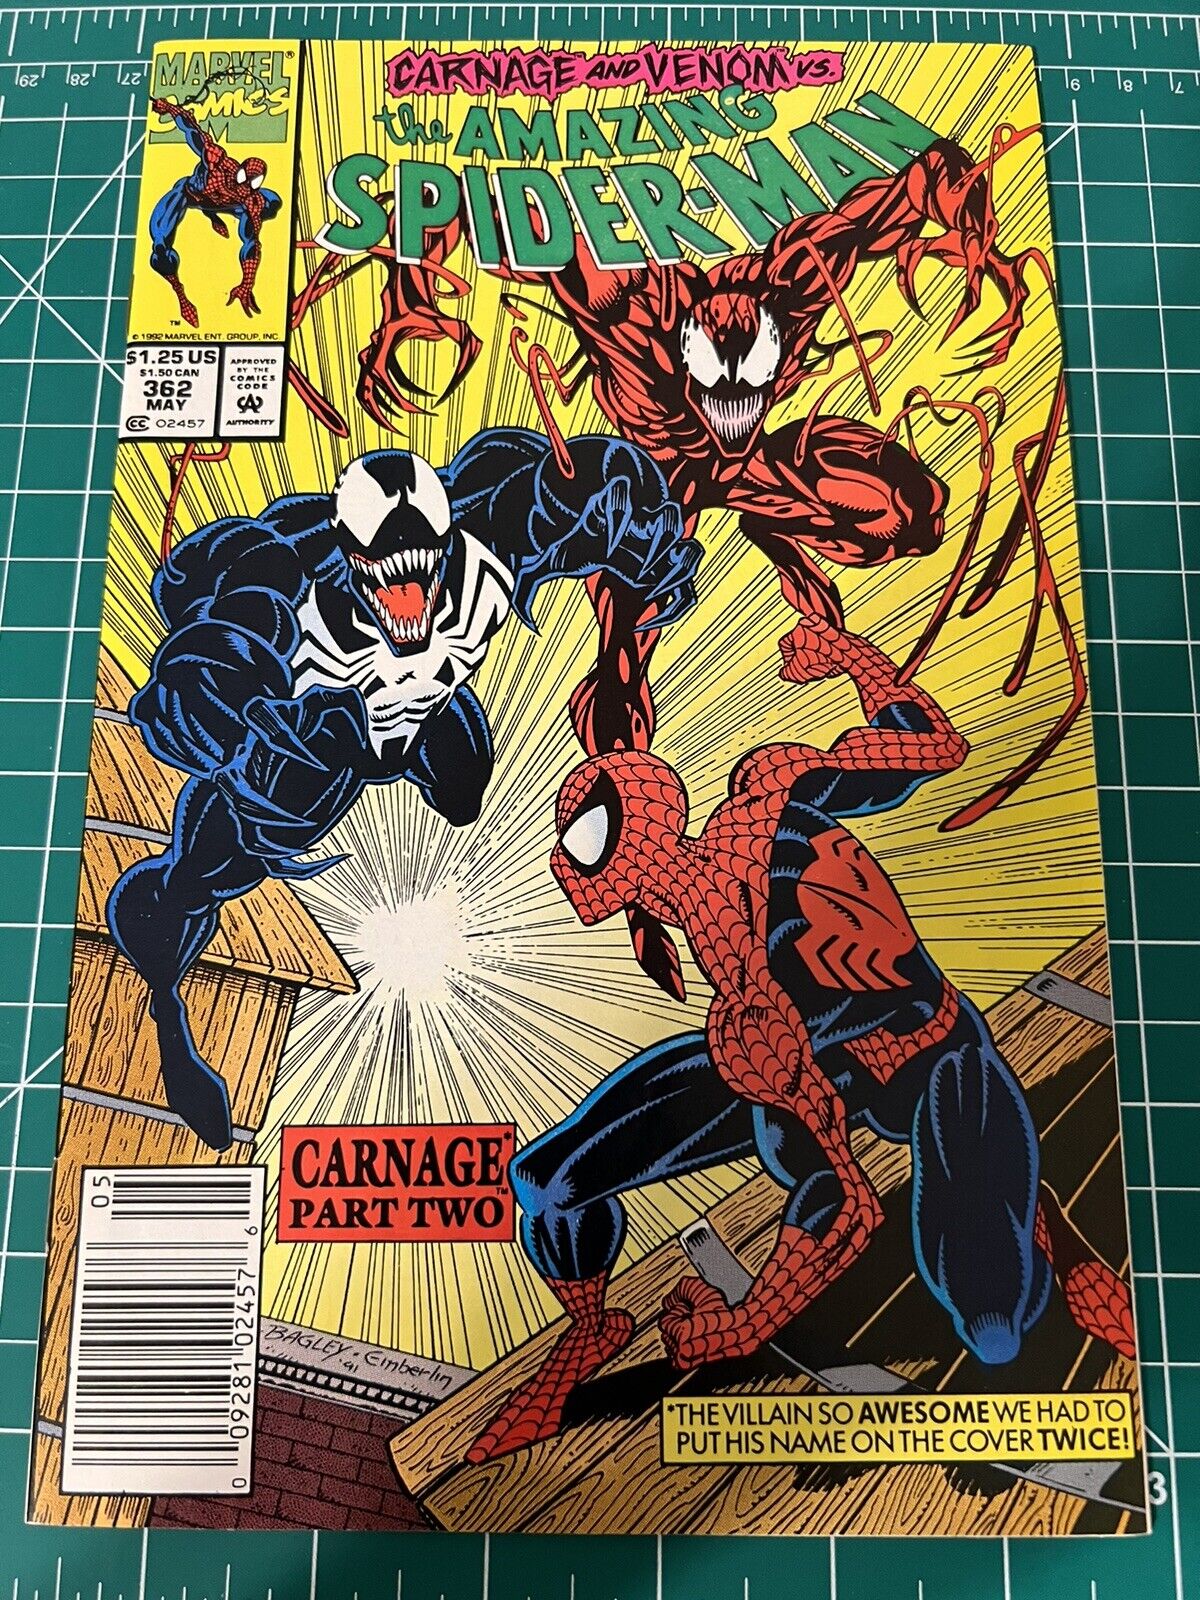 AMAZING SPIDER-MAN #362 Newsstand